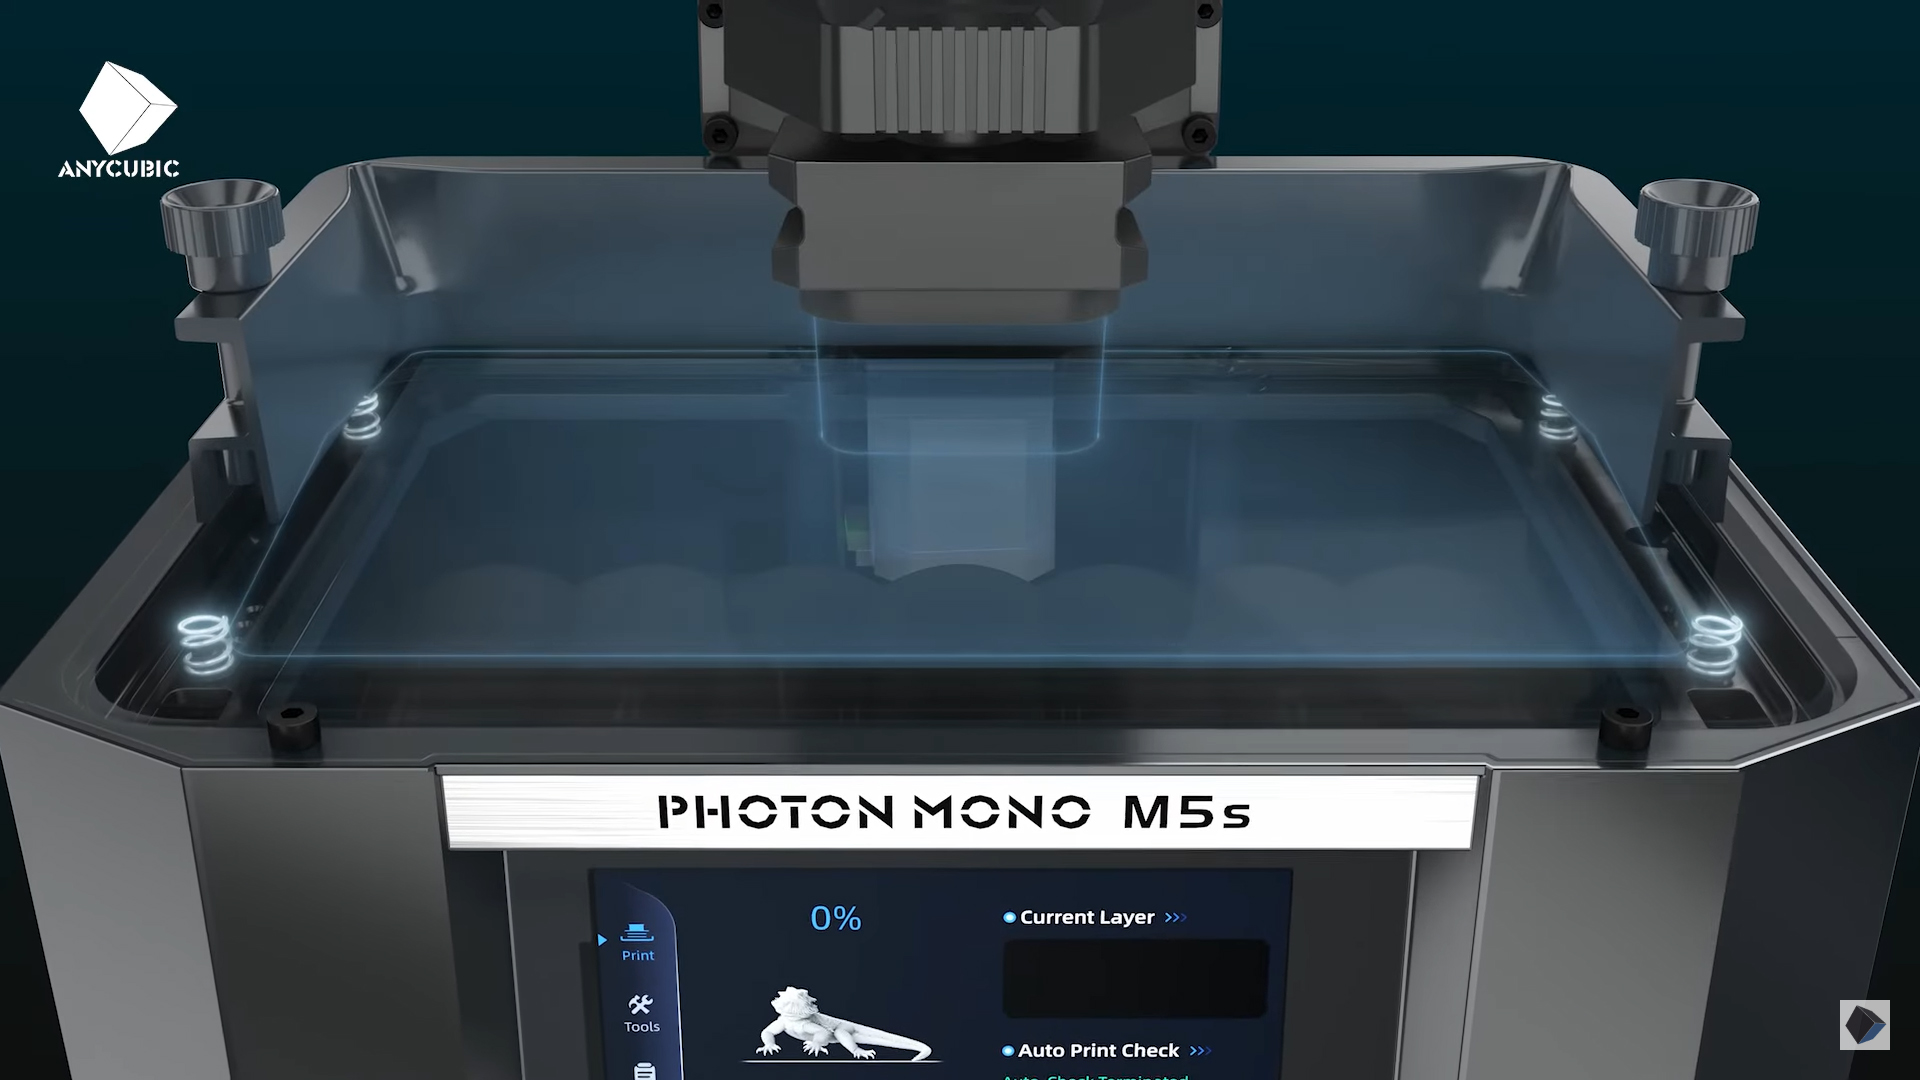 Anycubic Photon Mono M5s